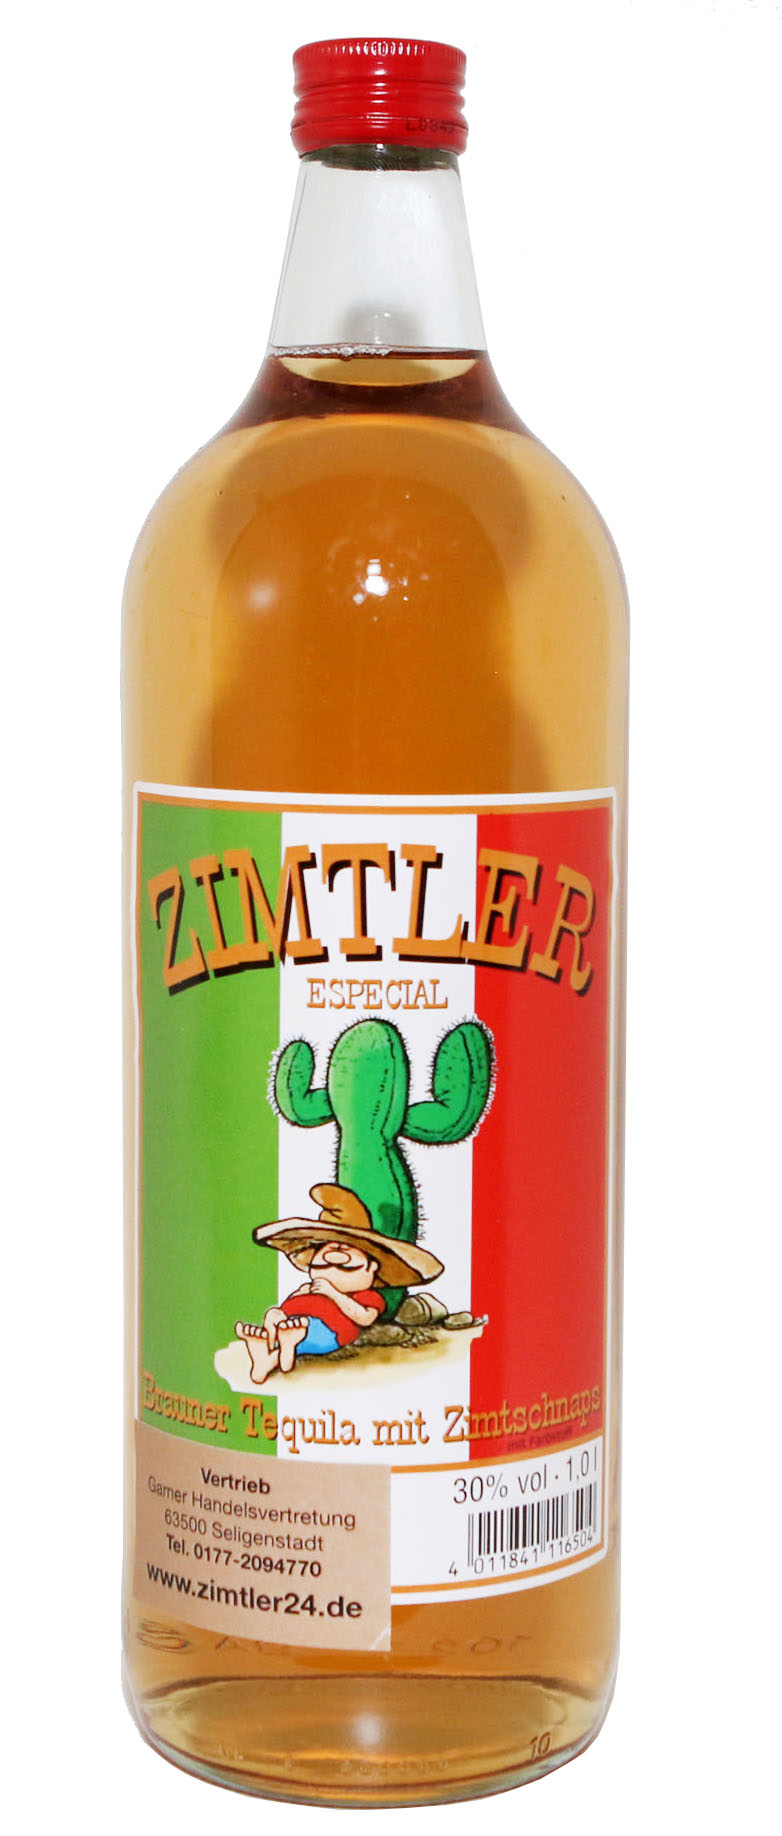 Zimtler - Das Original - Brauner Tequila mit Zimtlikör 30%vol. 1,0l